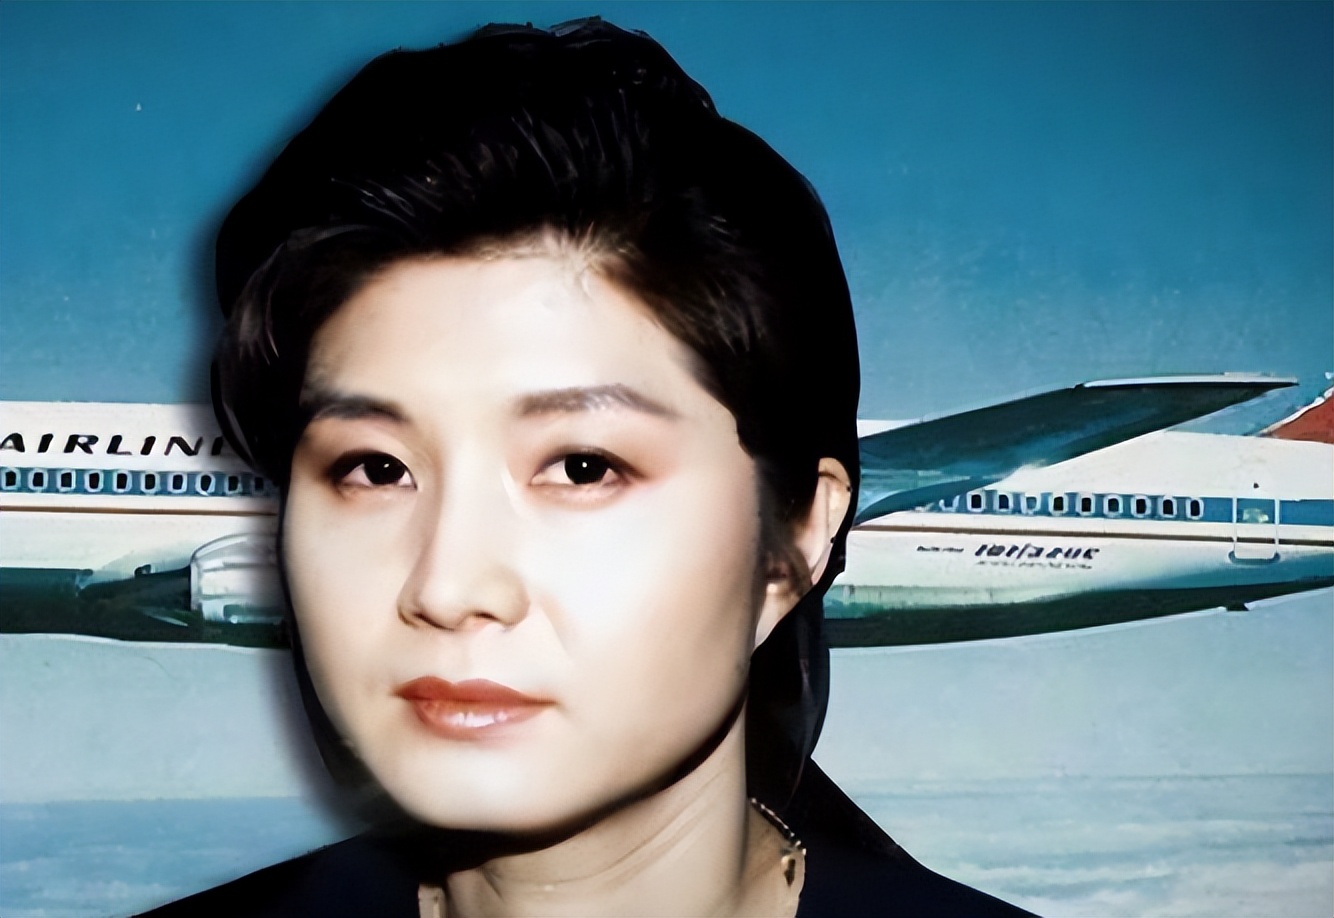 朝鲜美女特工金贤姬,炸毁韩国客机致115人死亡!却被卢愚泰特赦